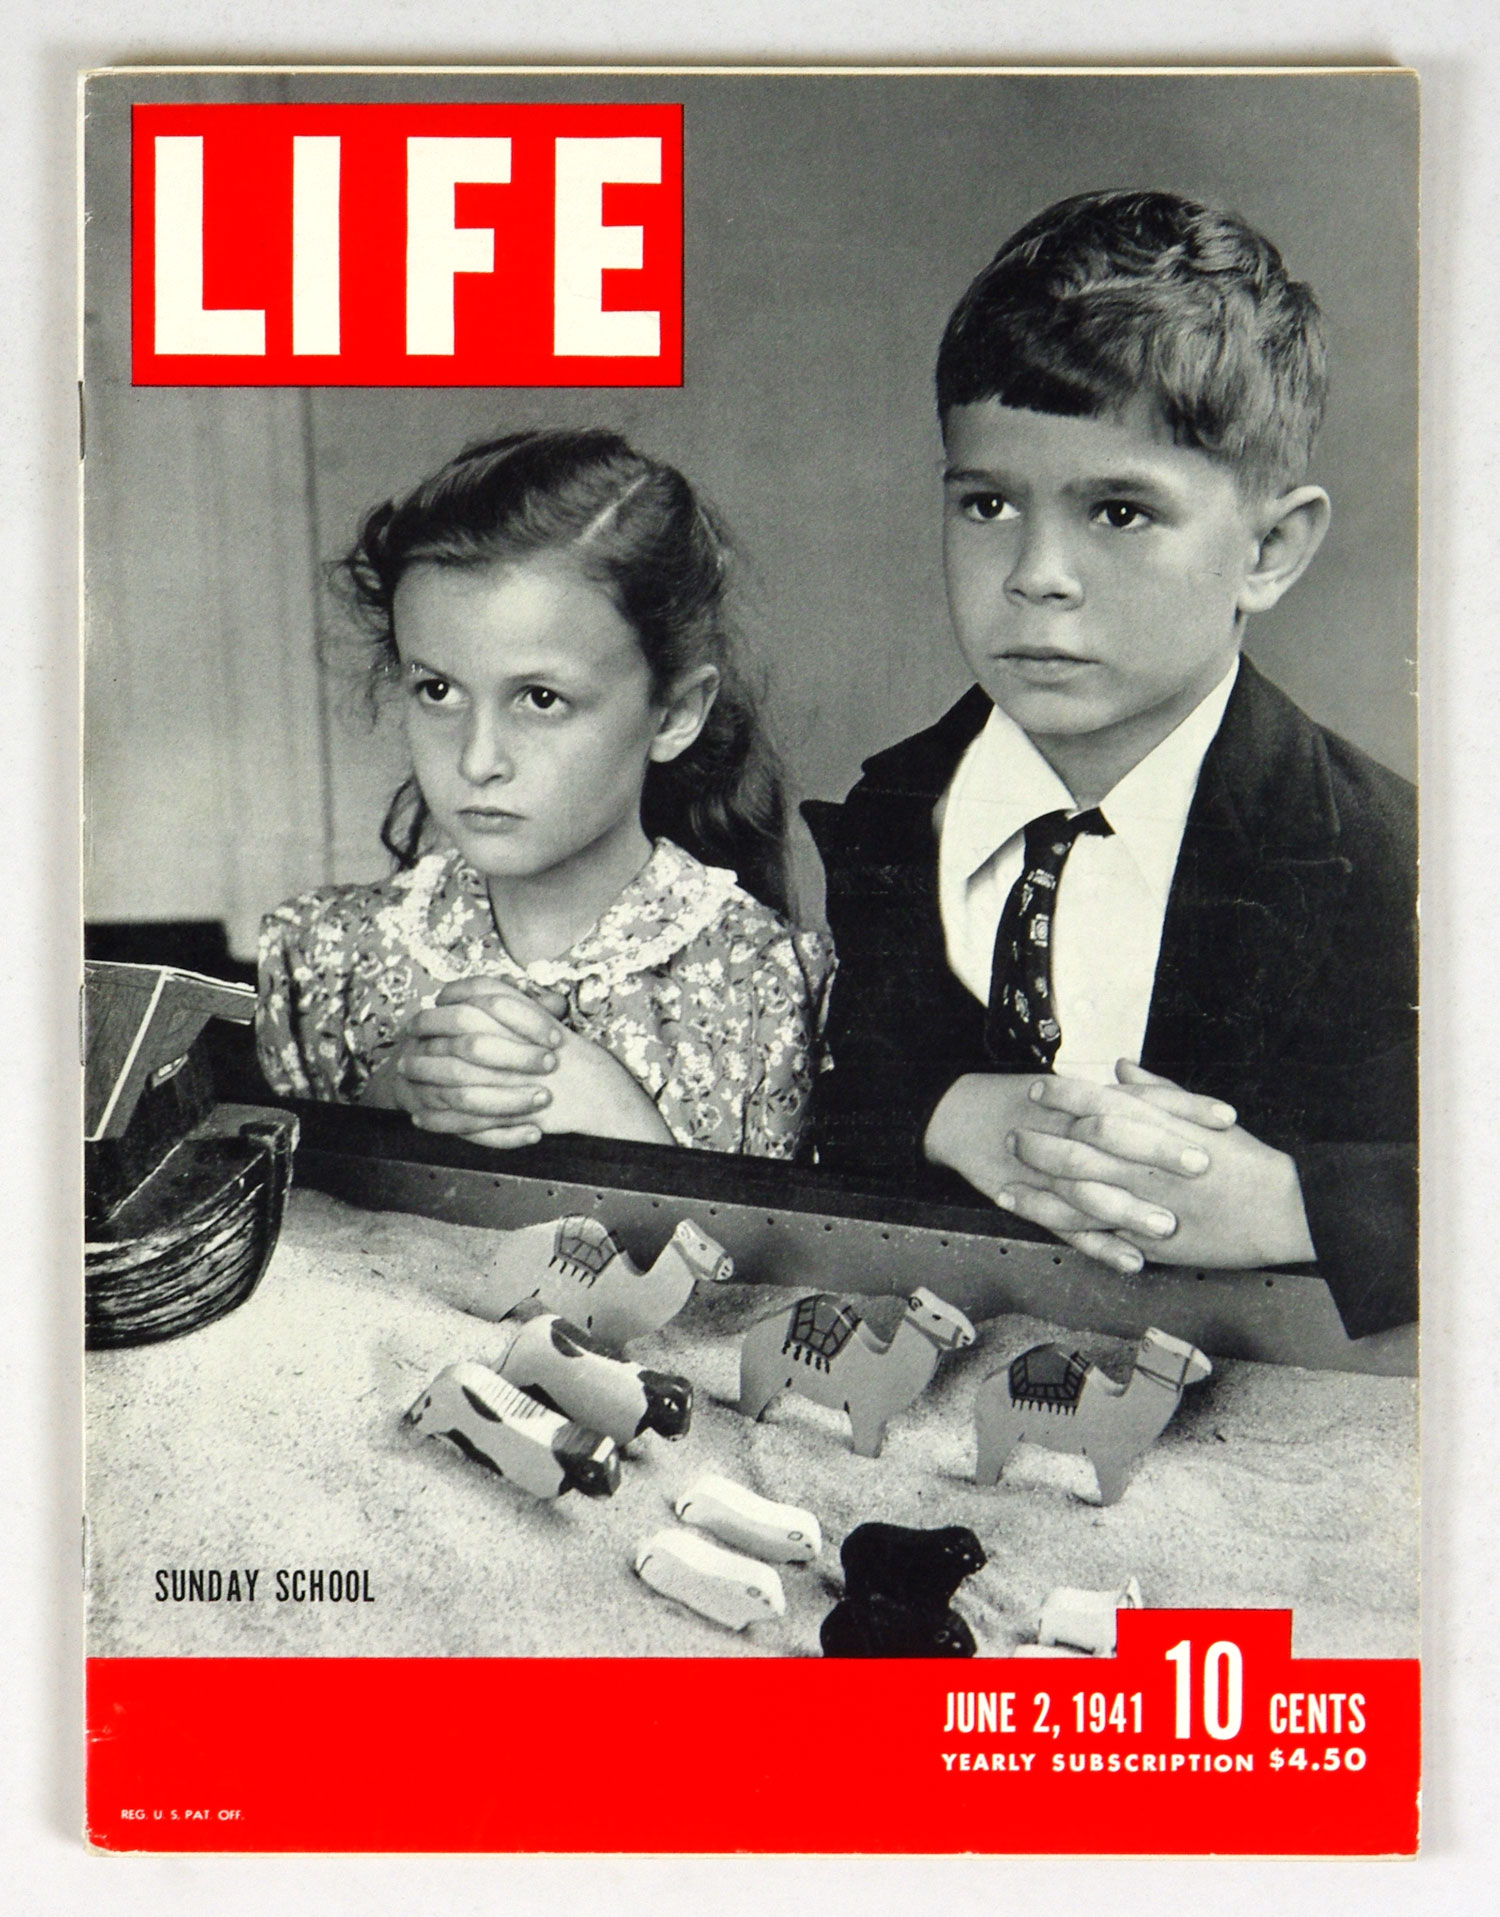 LIFE Magazine Back Issue 1941 June 2 Sunday School